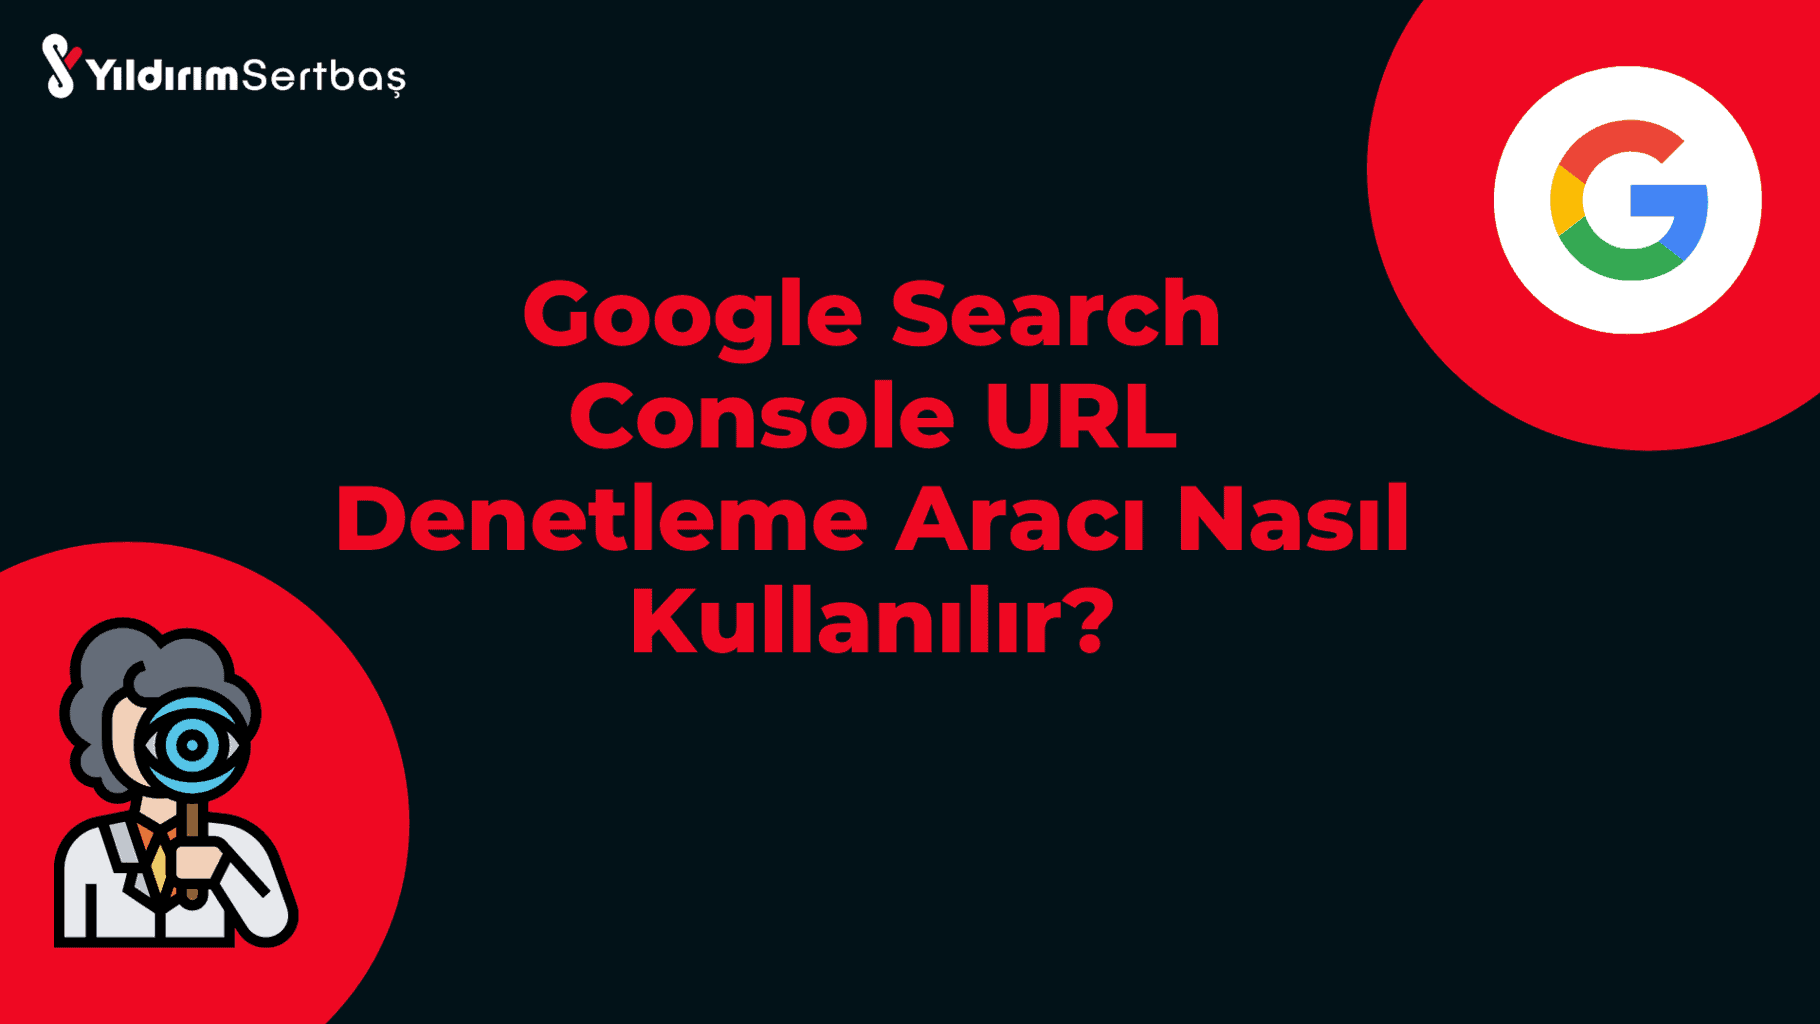 Google Search Console URL denetleme aracı